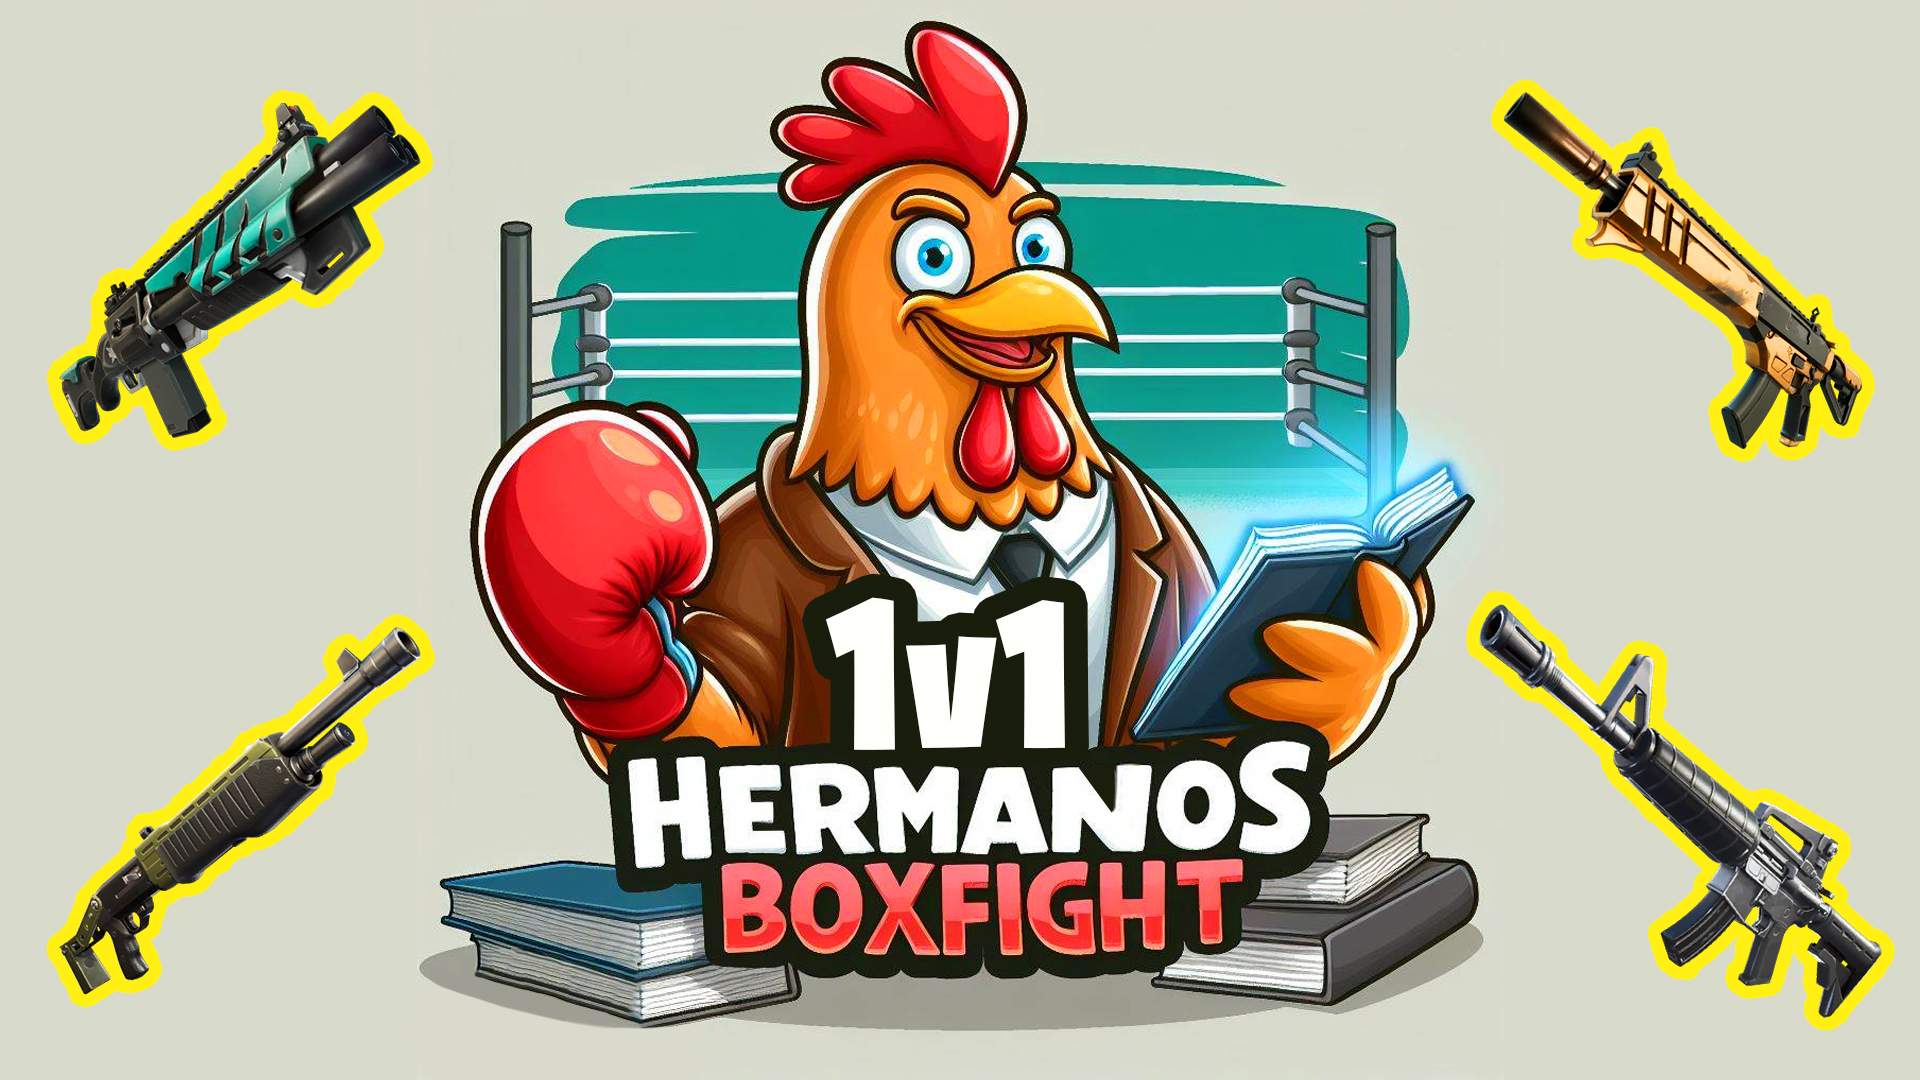 HERMANOS BOX FIGHT (1V1)